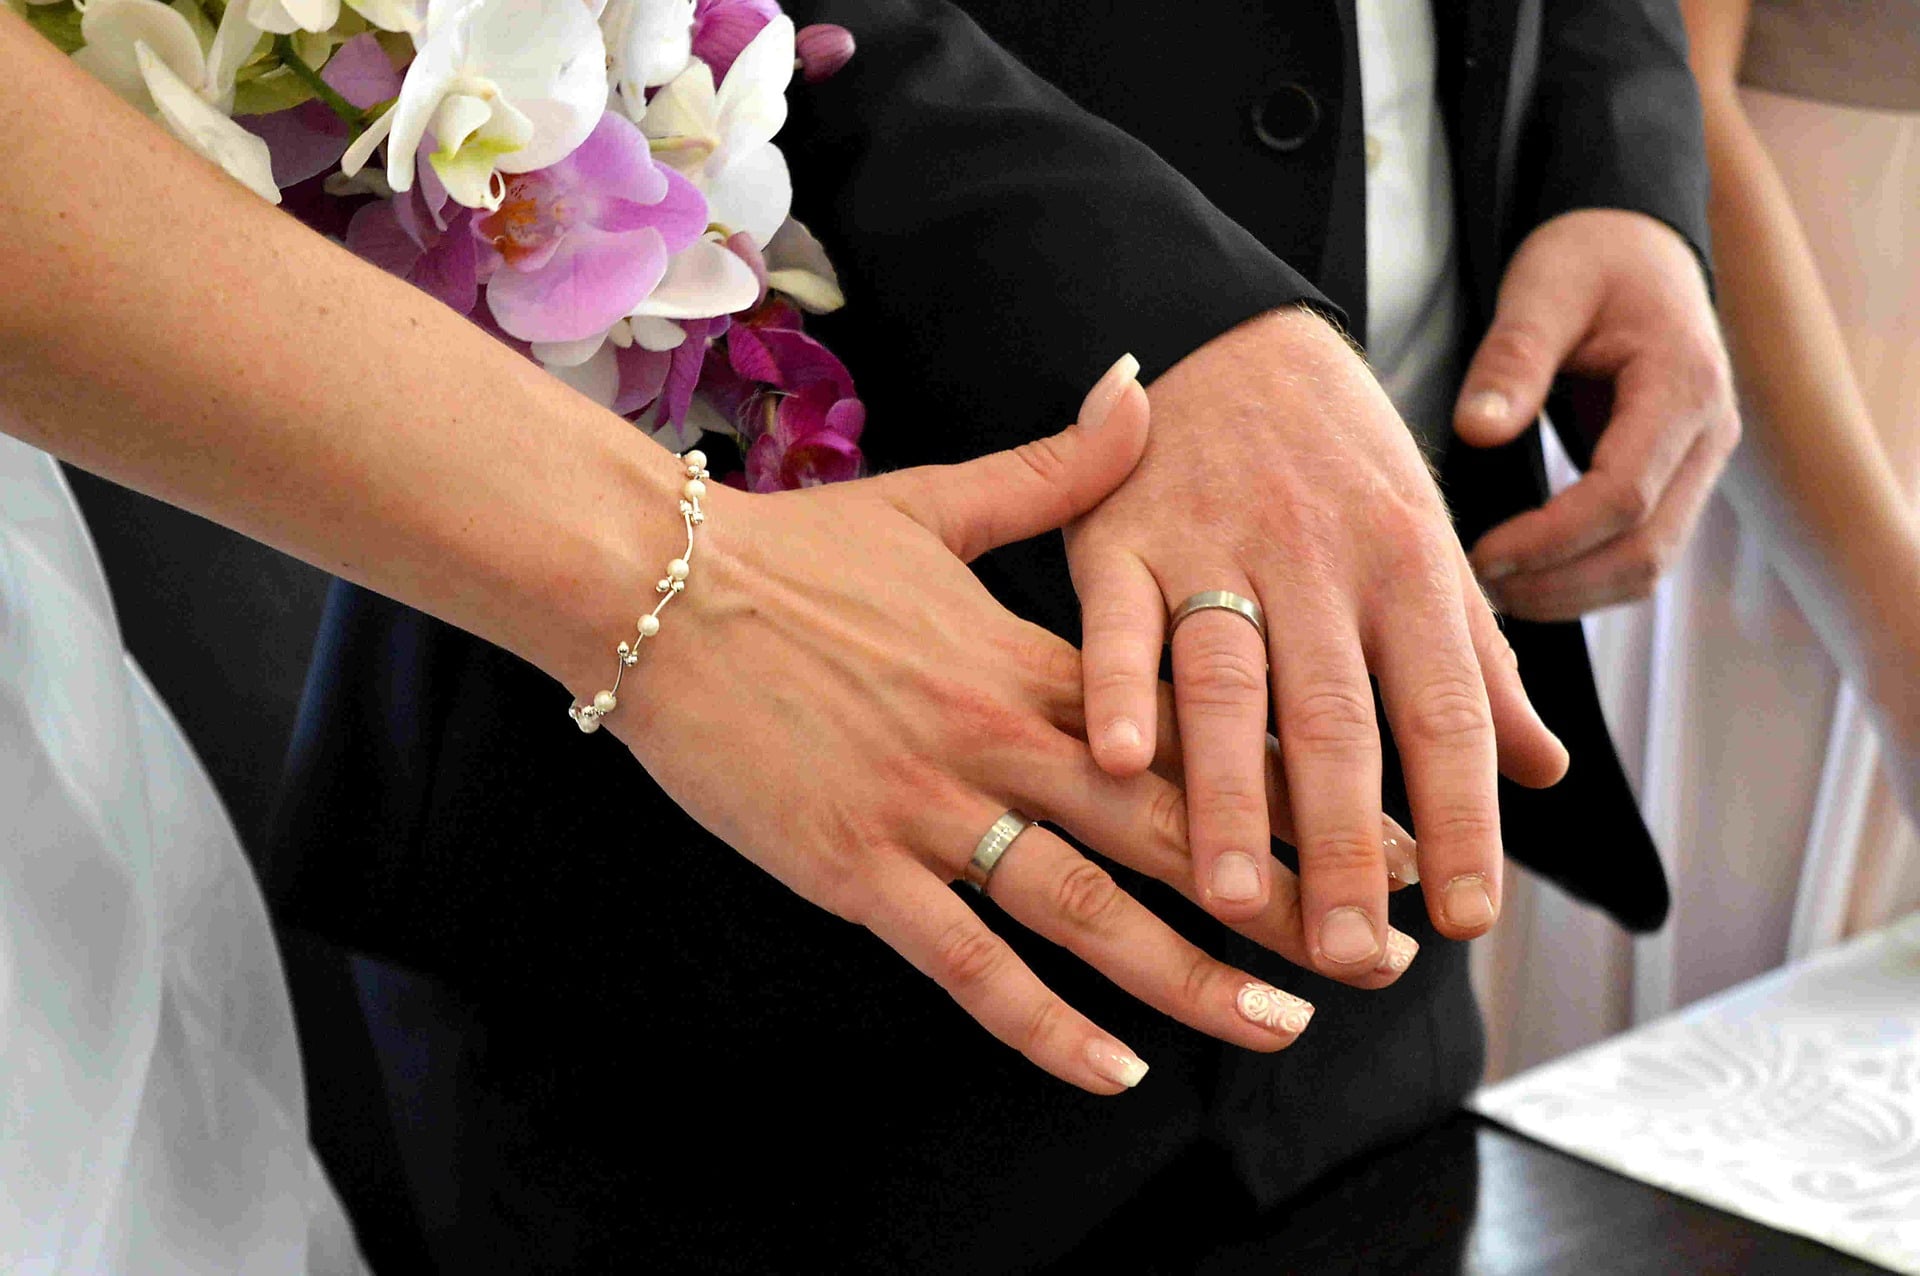 Разведенные на какой руке кольцо. Обручальные кольца на руках. Свадебные кольца на руках. Кольца жениха и невесты. Свадьба руки с кольцами.